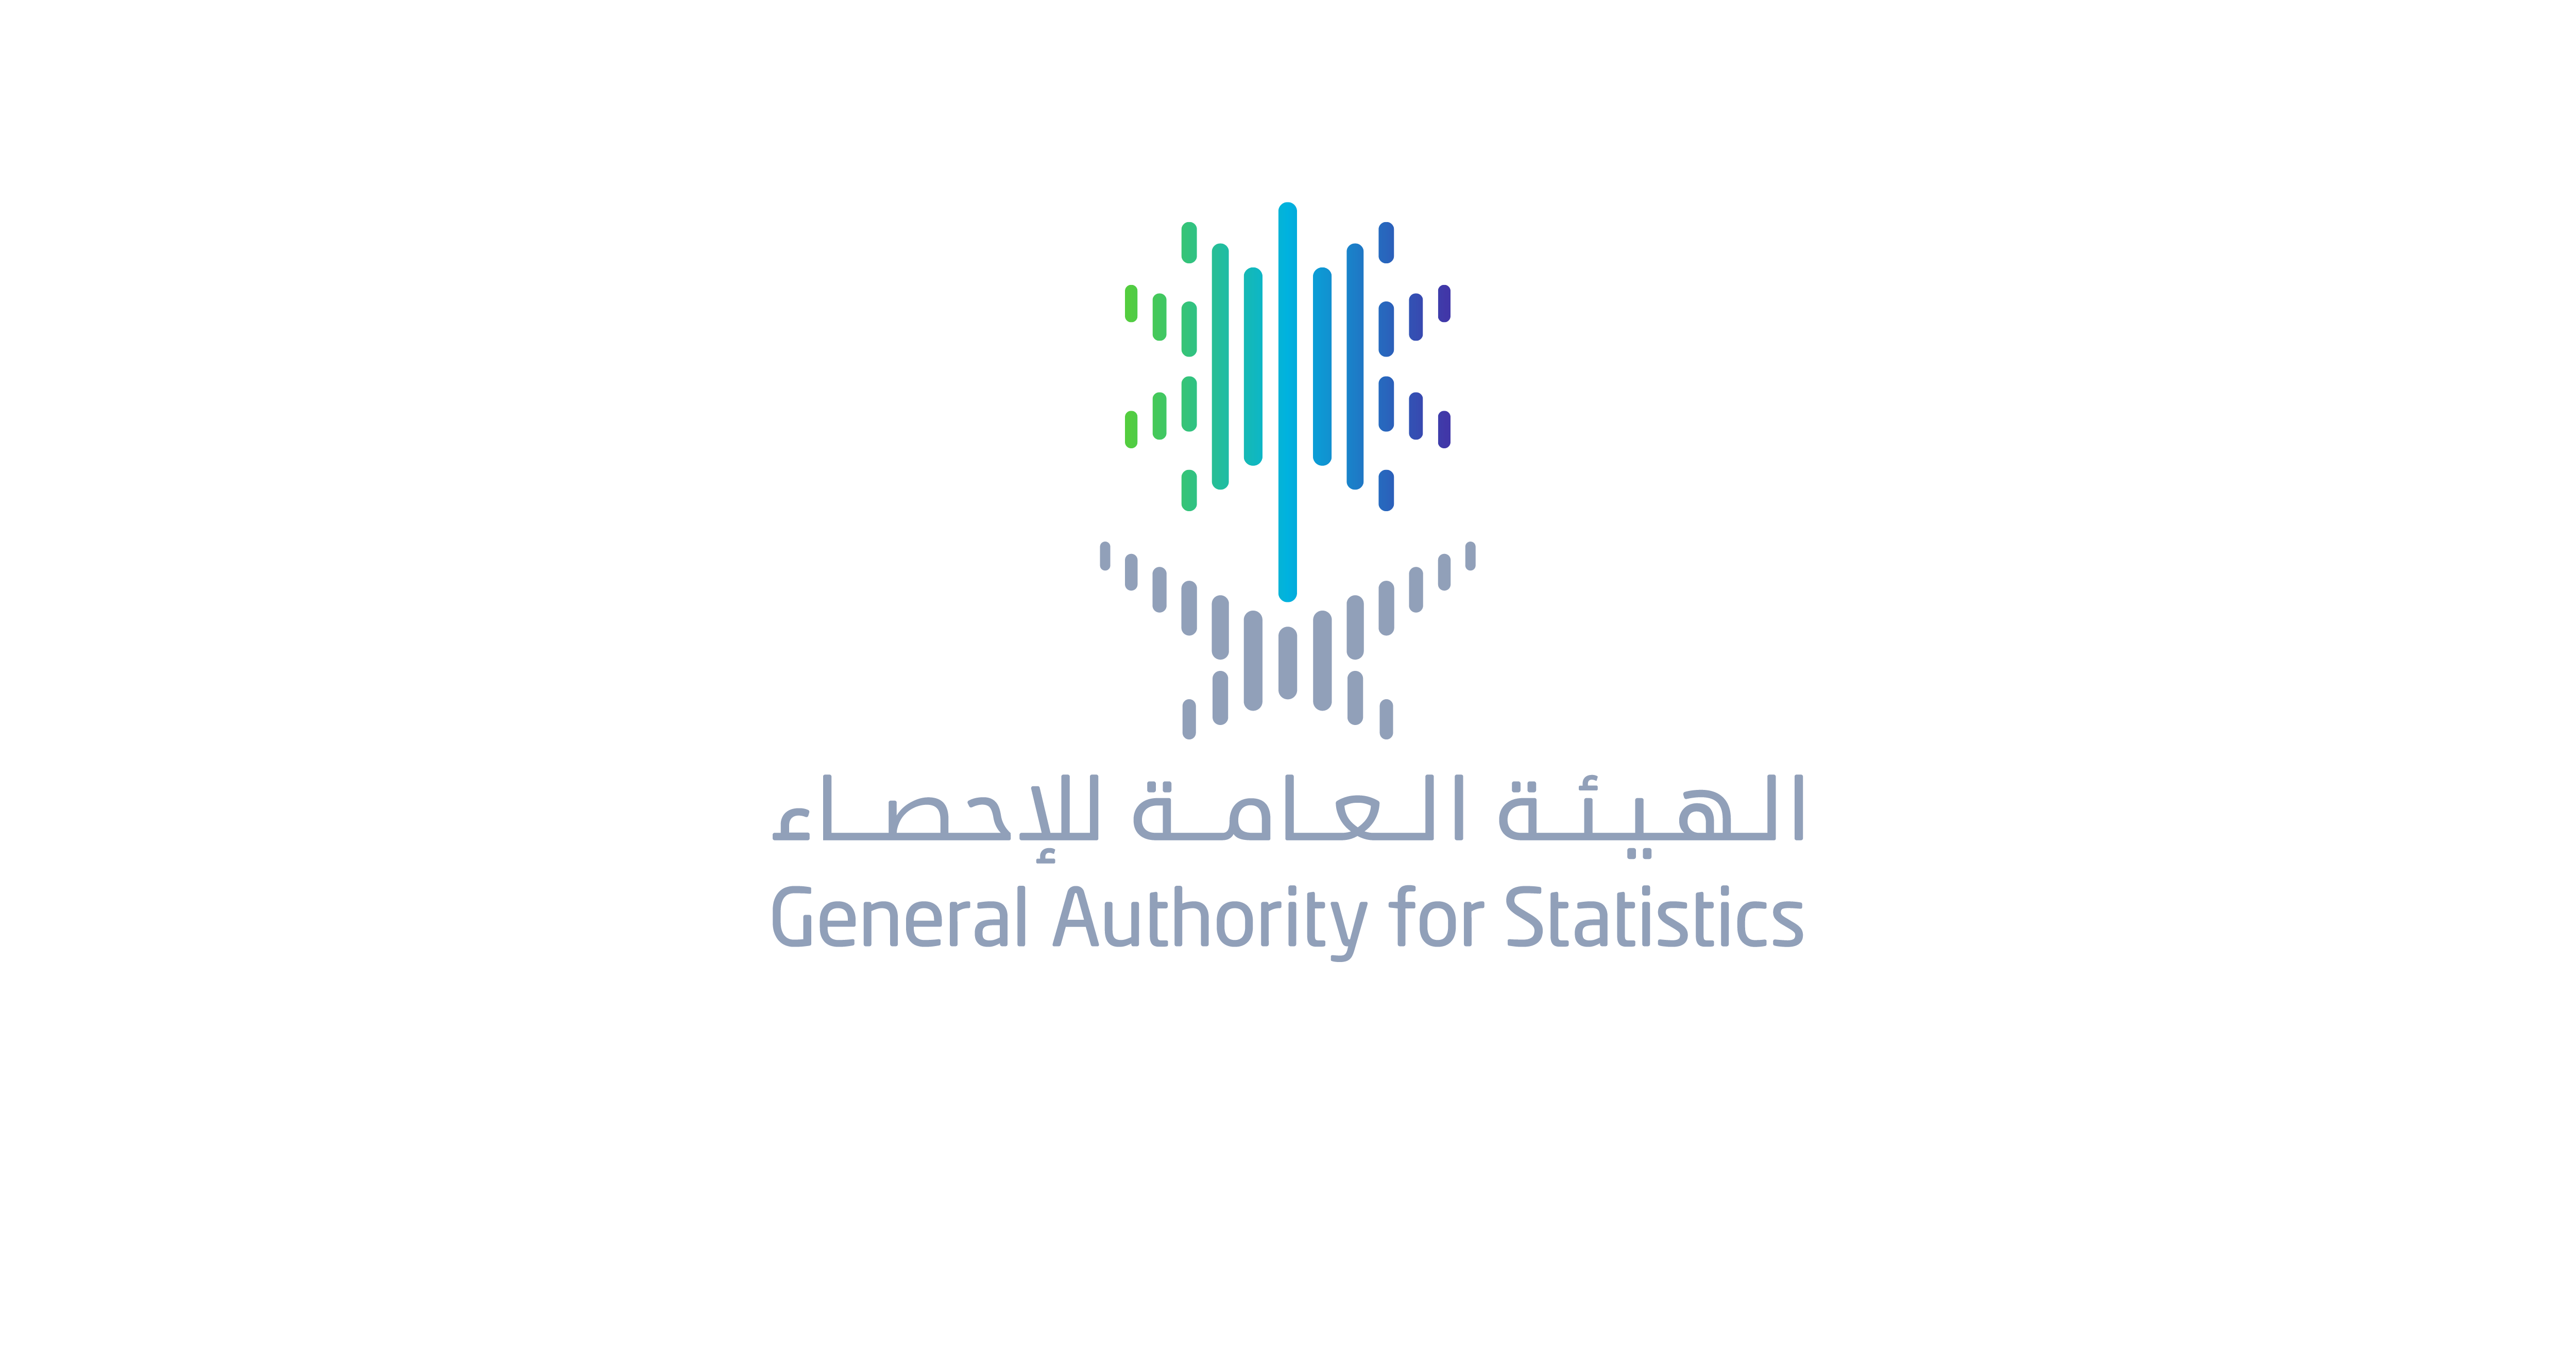  الهيئة العامة للإحصاء توفر وظائف (مؤقتة) في مجال التعداد السكاني بالرياض